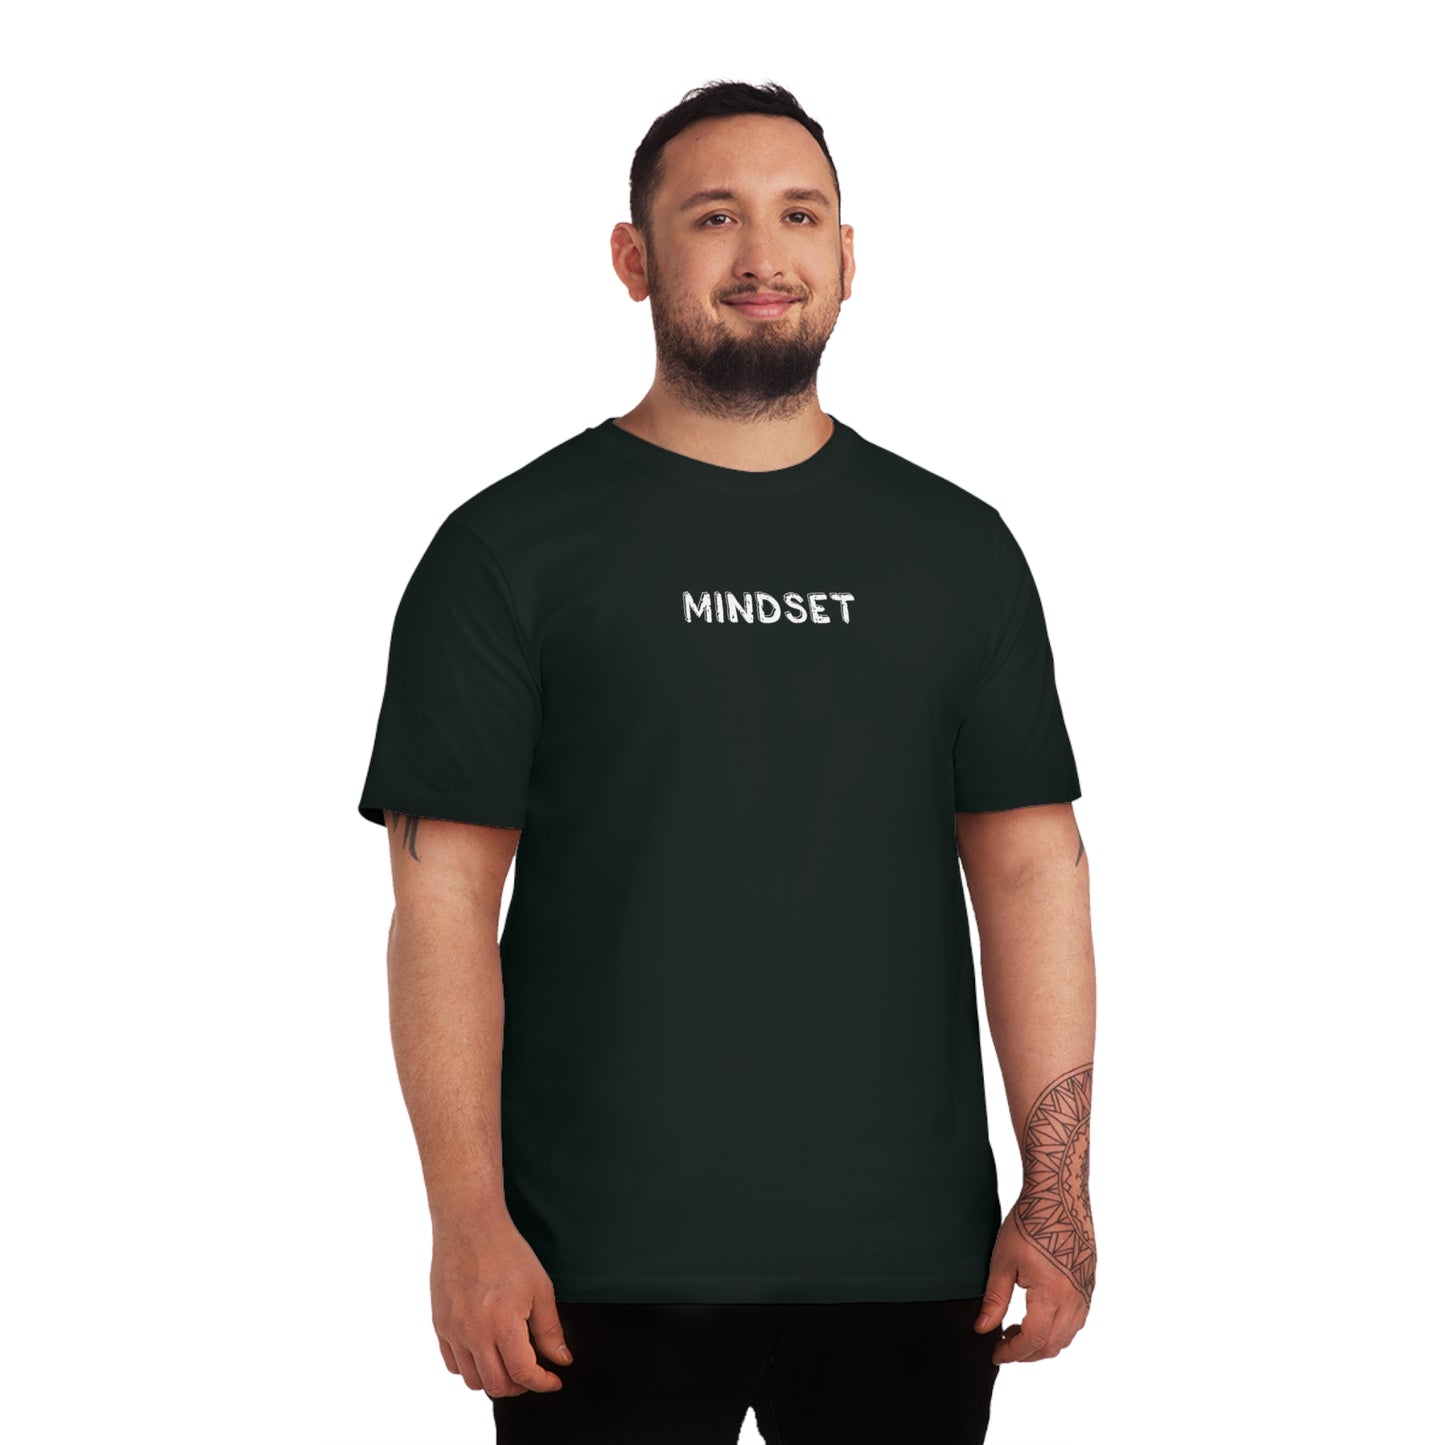 T-shirt - Mindset - Black